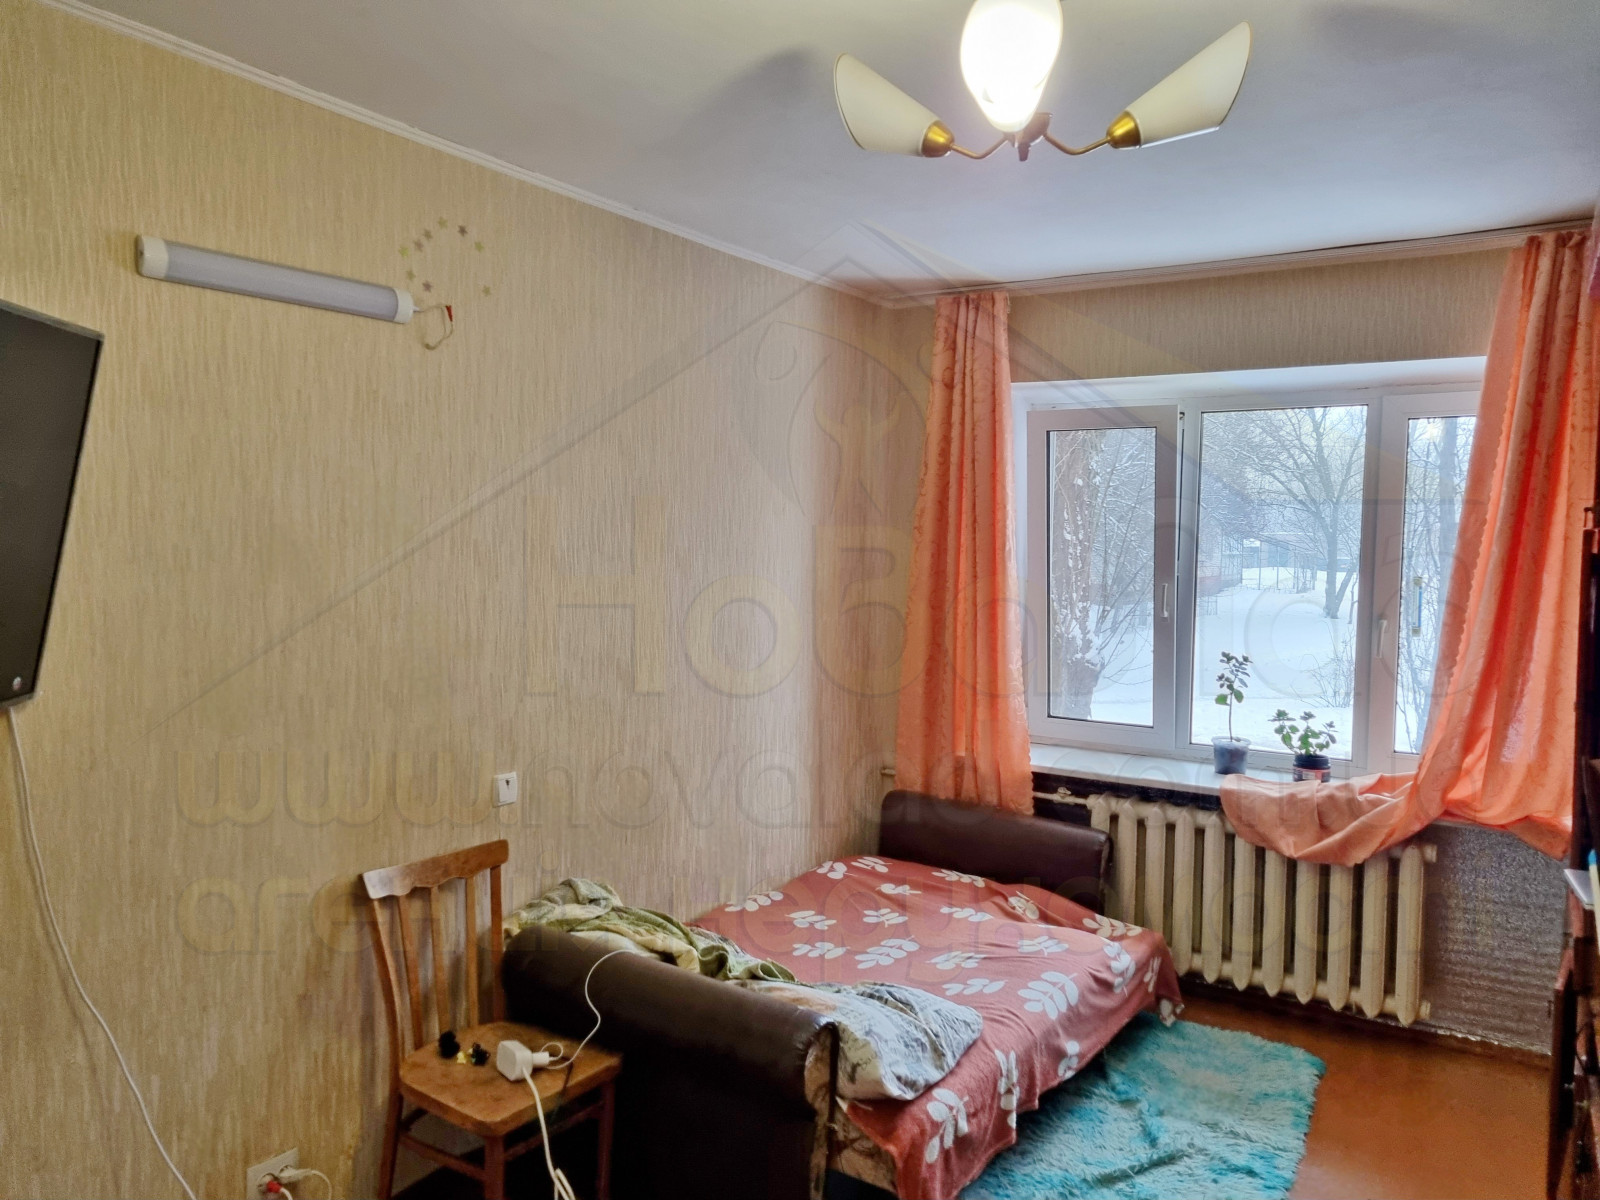 2 кімнатна квартира 40 м2 з ремонтом по вул. Текстильників